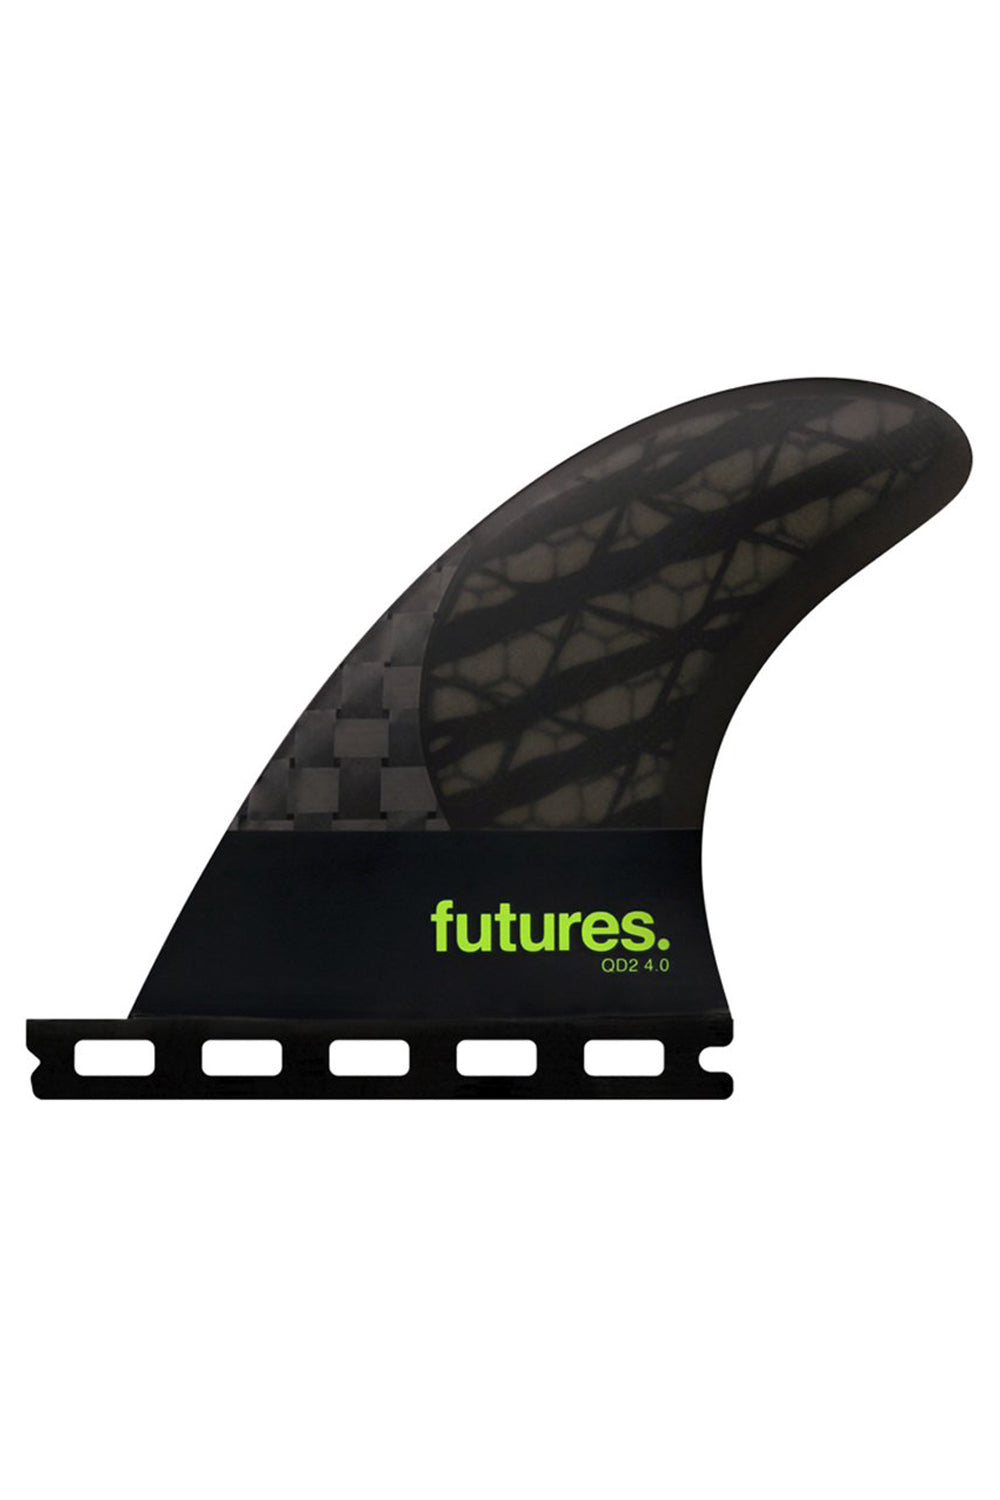 Futures QD2 4.0 Blackstix Quad Rears